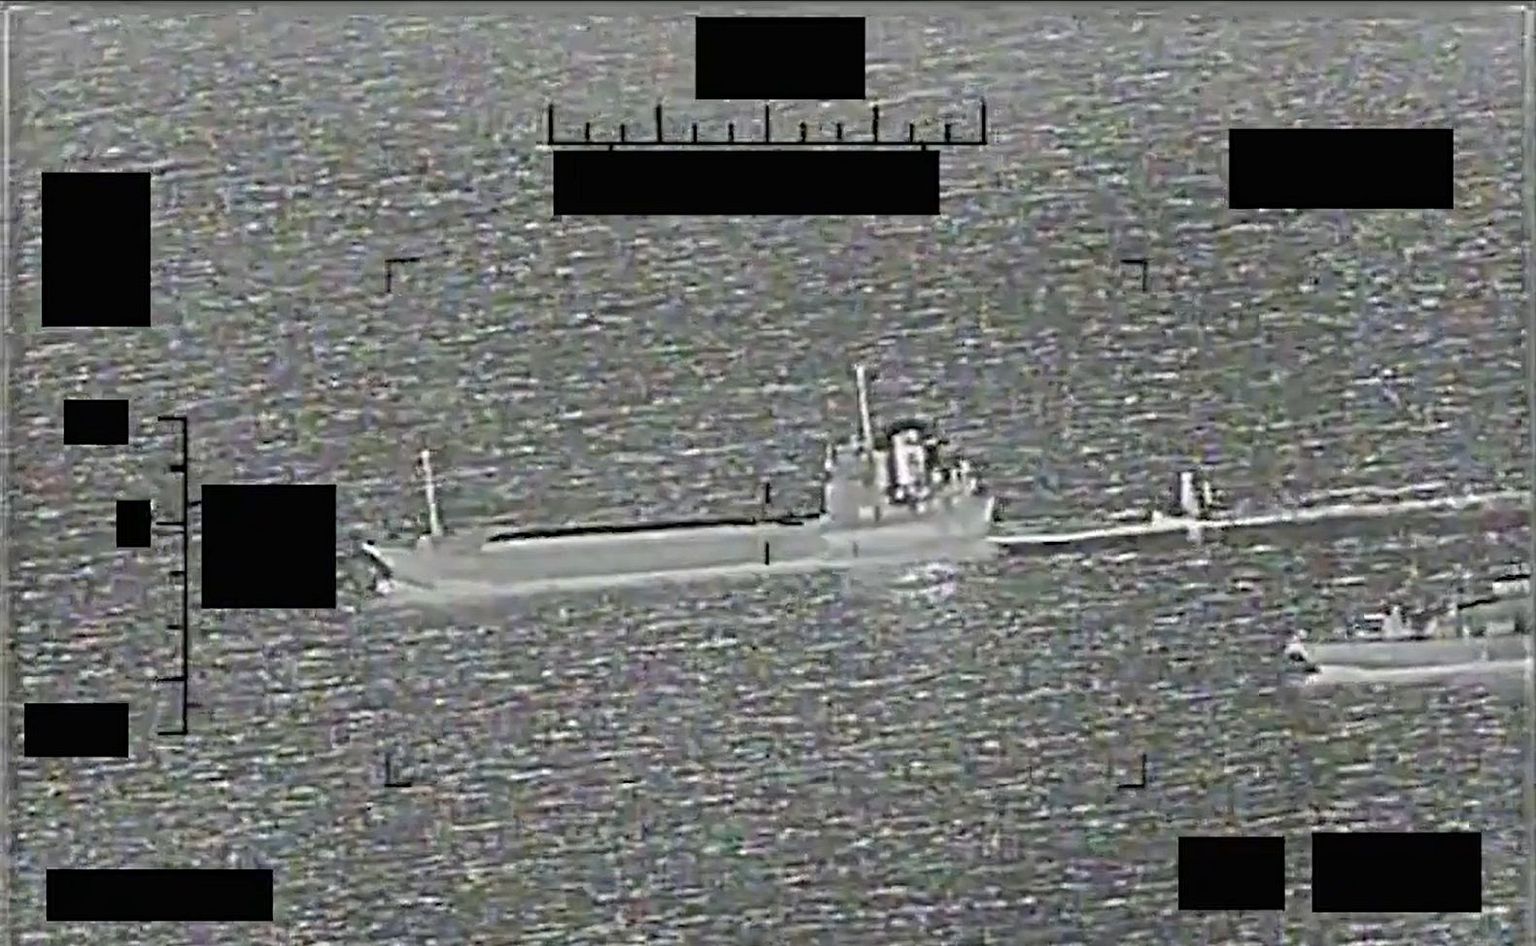 Iraani mereväe alus üritas minema vedada USA mereväe mehitamata droonpurjekat. See on ilmselt üks esimesi mehitamata laeva kaaperdamisi ajaloos.